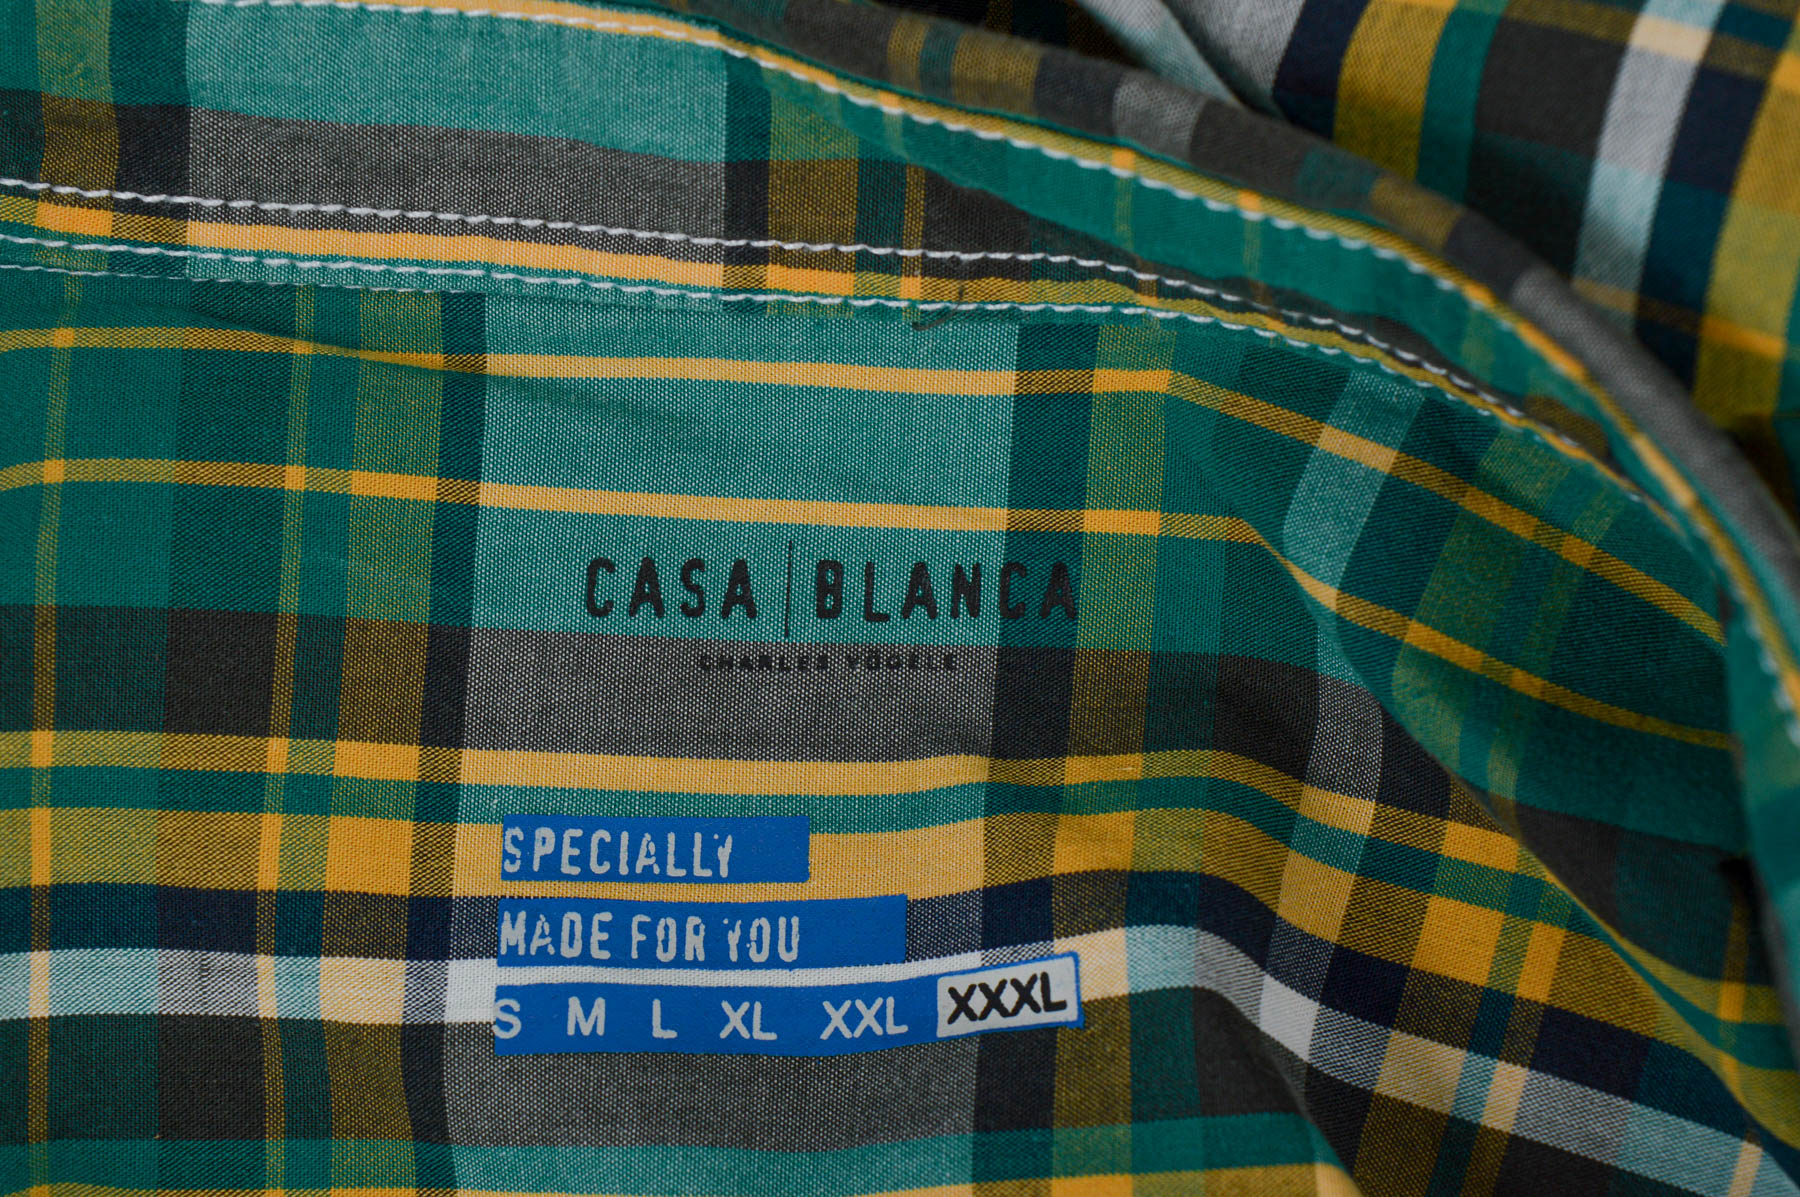 Мъжка риза - Casa Blanca - 2